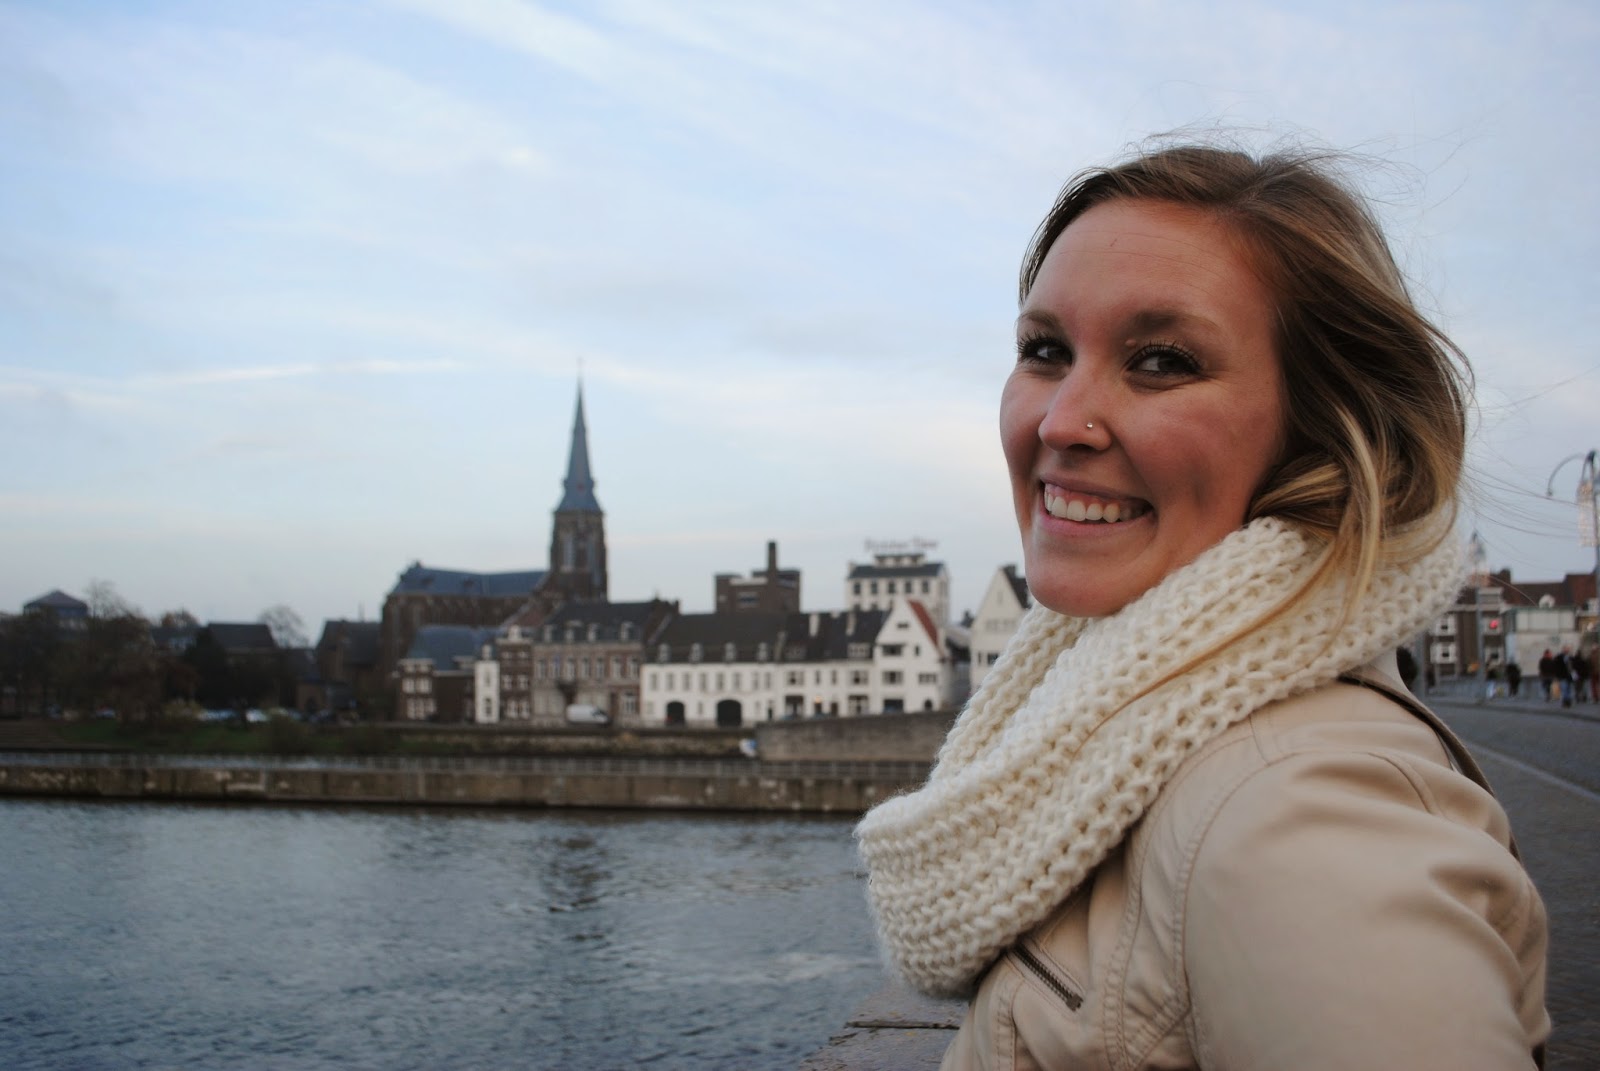 Erinn smiles in Maastricht, Netherlands.